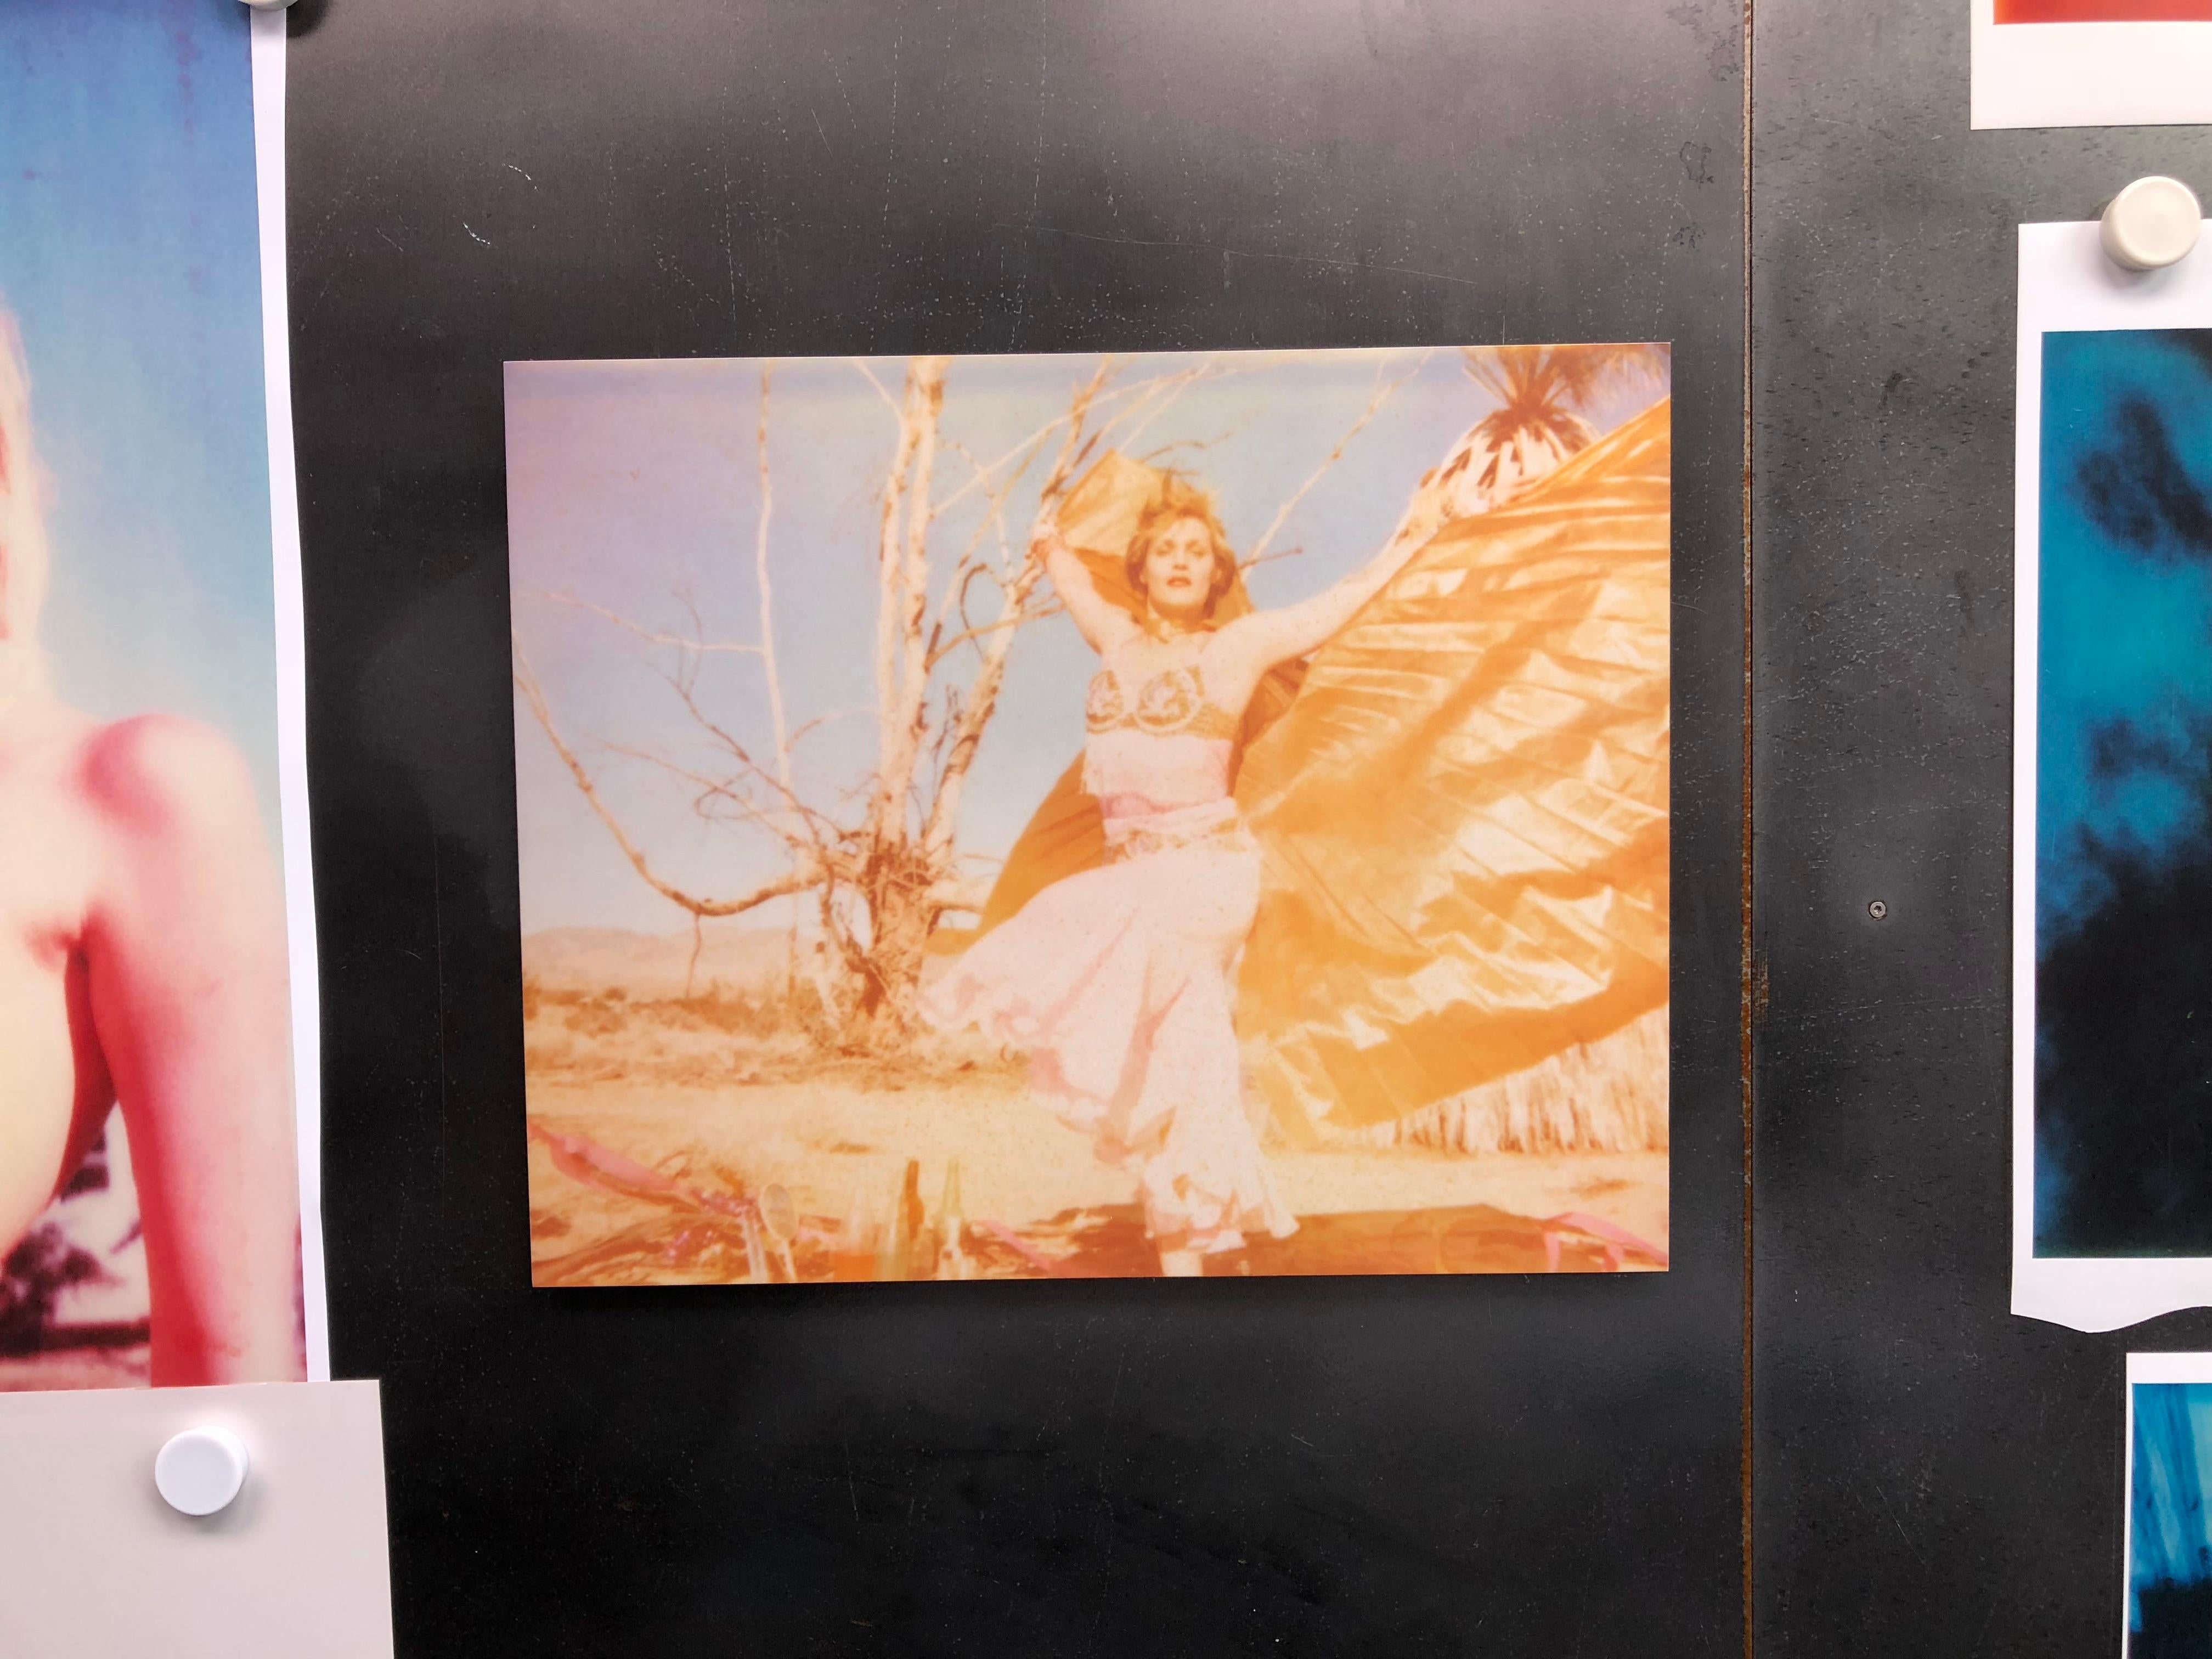 Le mystique - Circle of Magic (29 Palms, CA)-  Polaroid, Figuratif, Femme - Contemporain Photograph par Stefanie Schneider